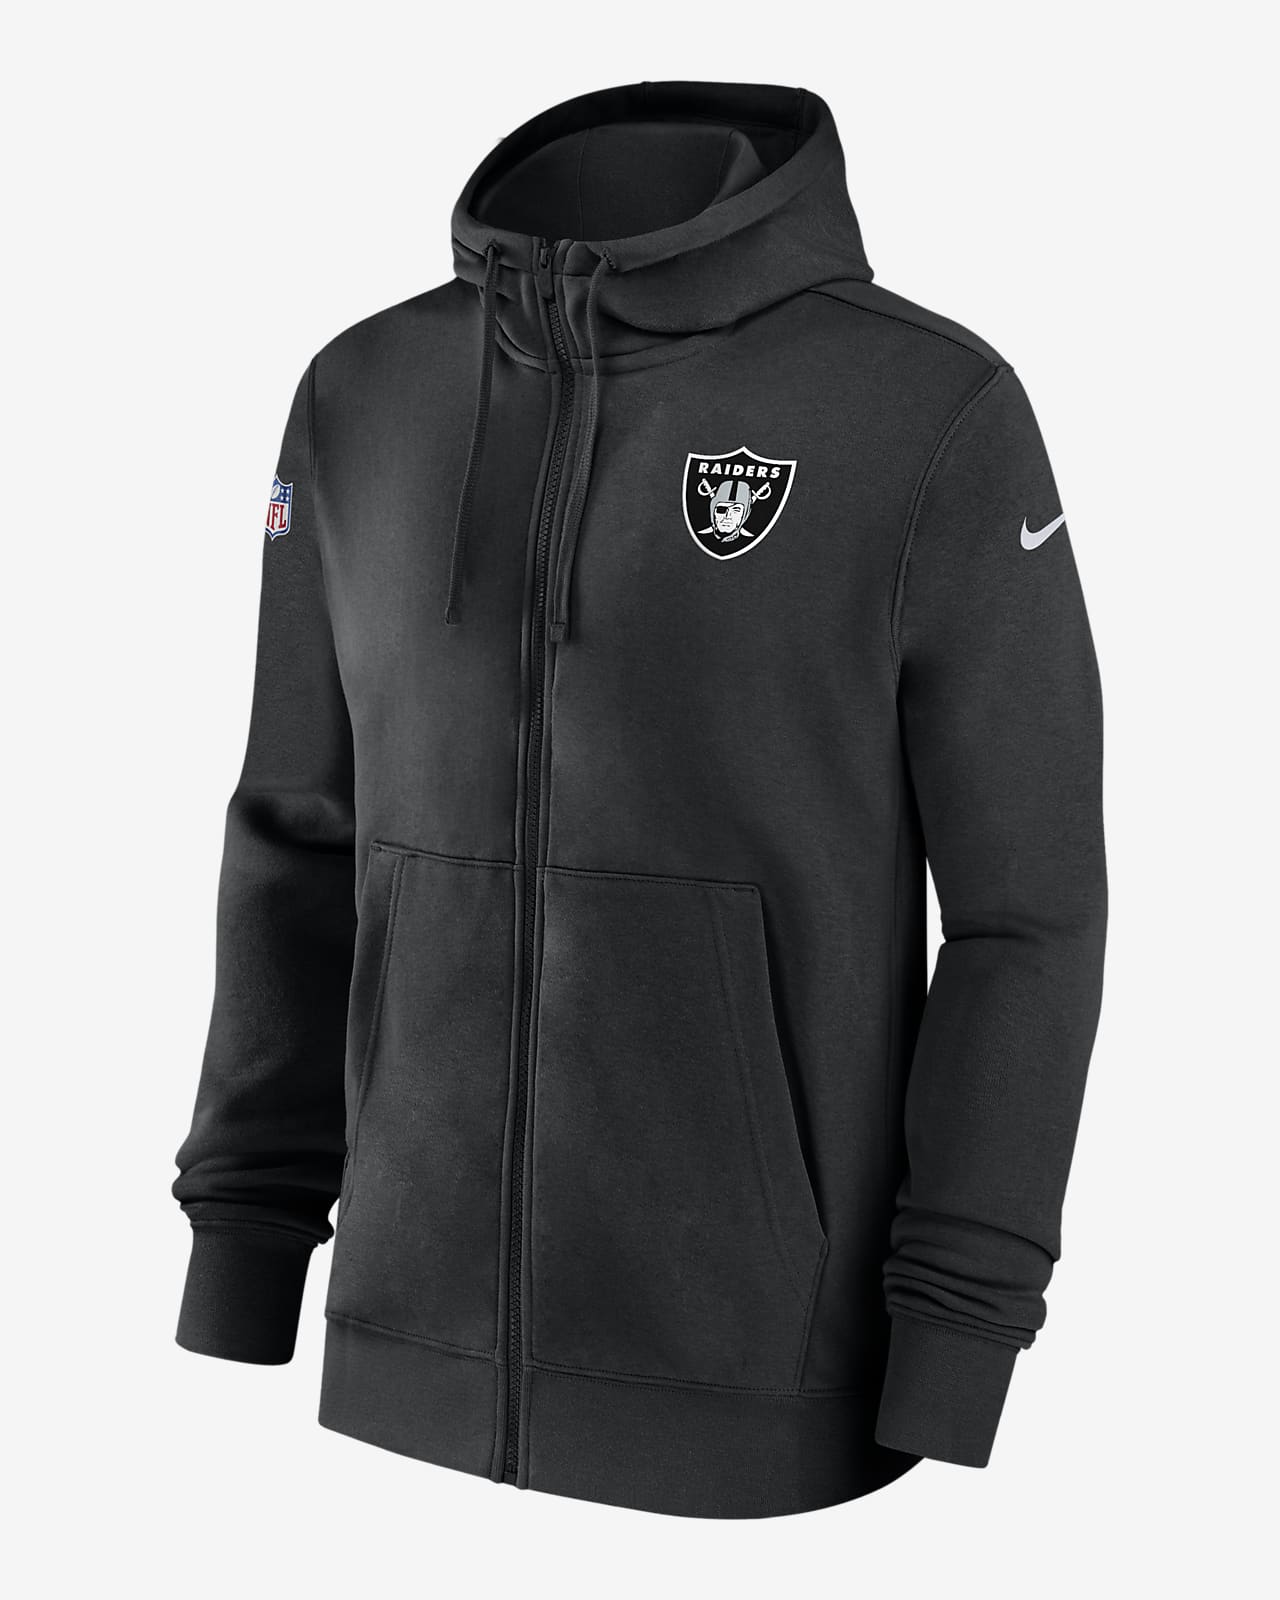 Las Vegas Raiders Sideline Club Men’s Nike NFL Pullover Hoodie